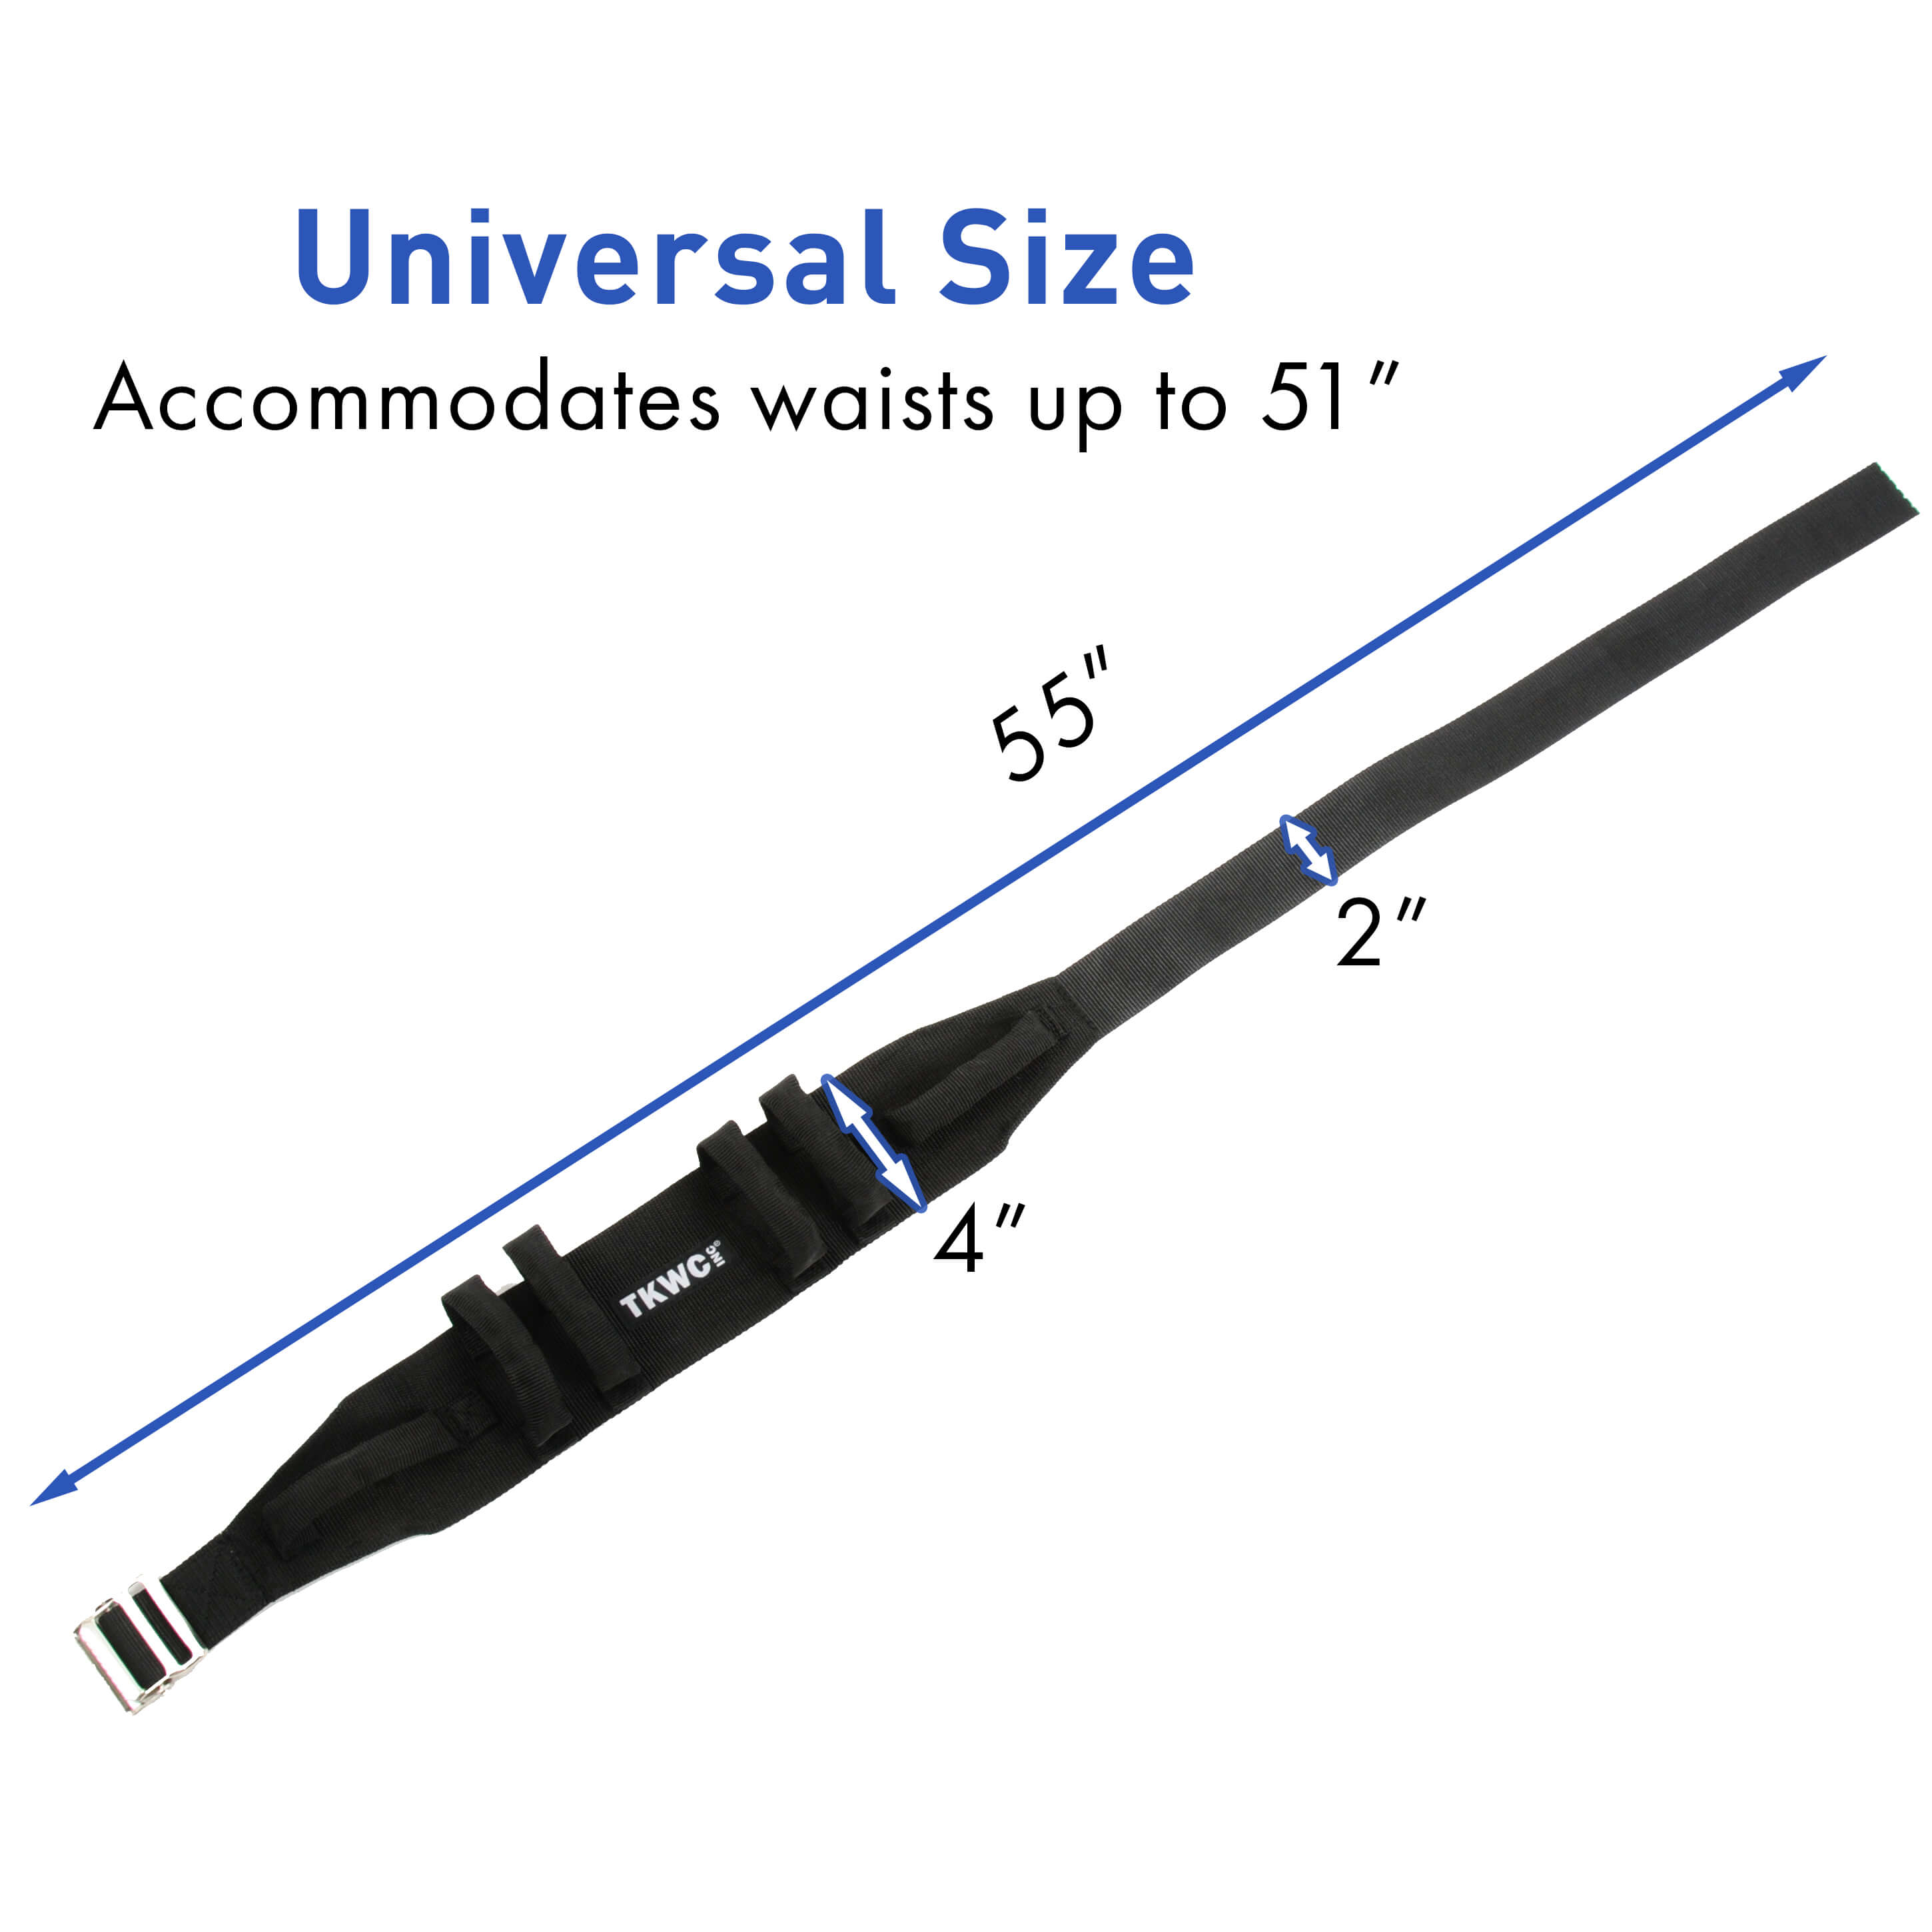 Universal Size